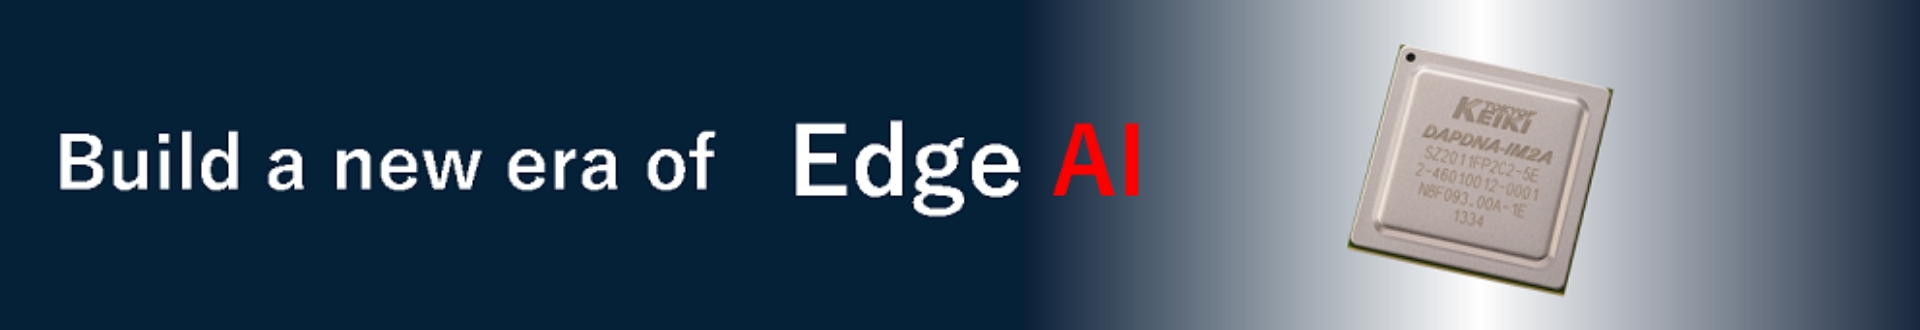 Build a new era of Edge AI